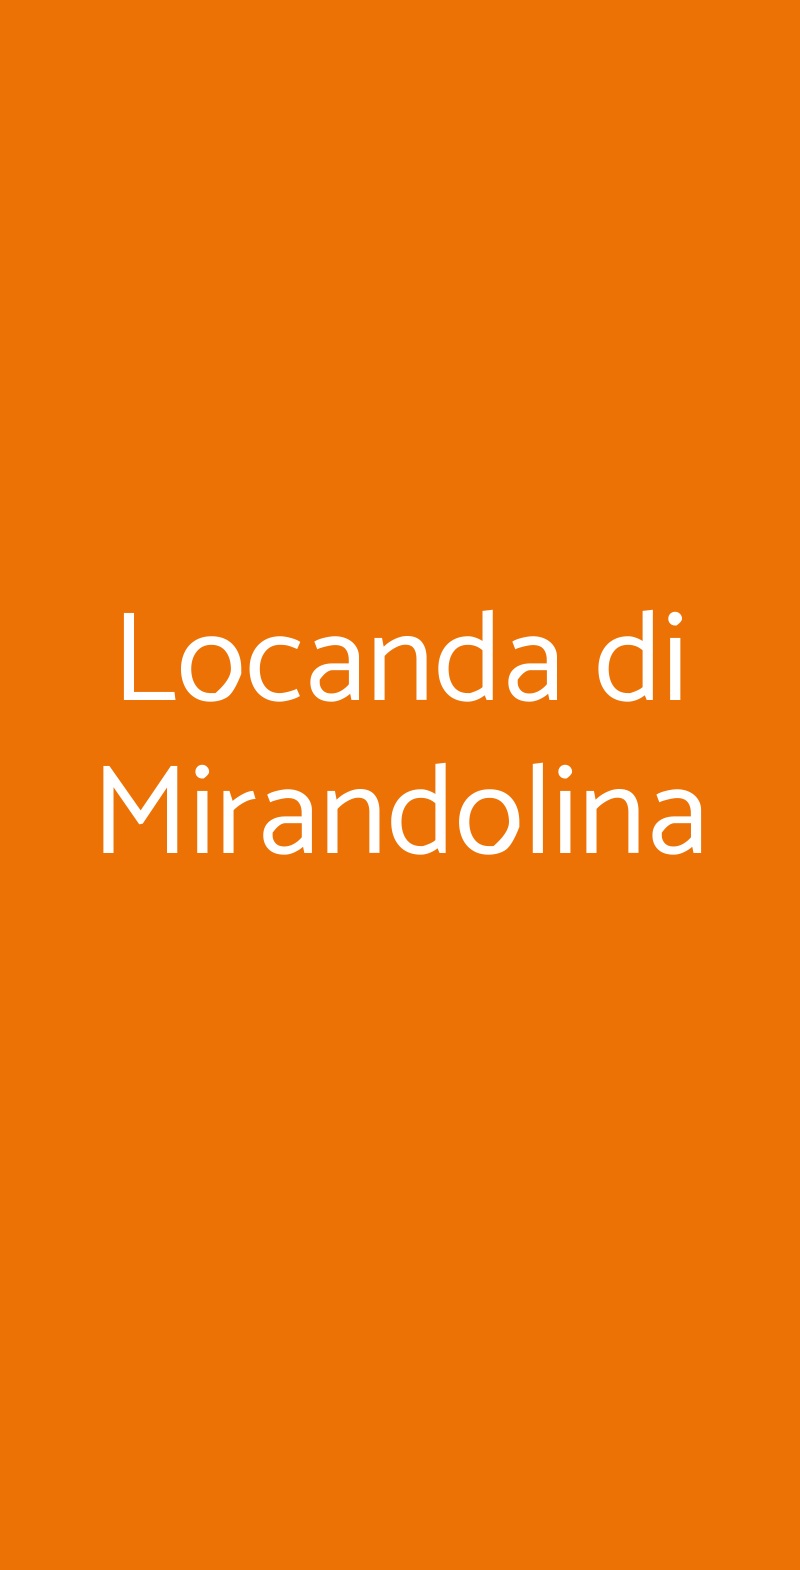 Locanda di Mirandolina Tuscania menù 1 pagina